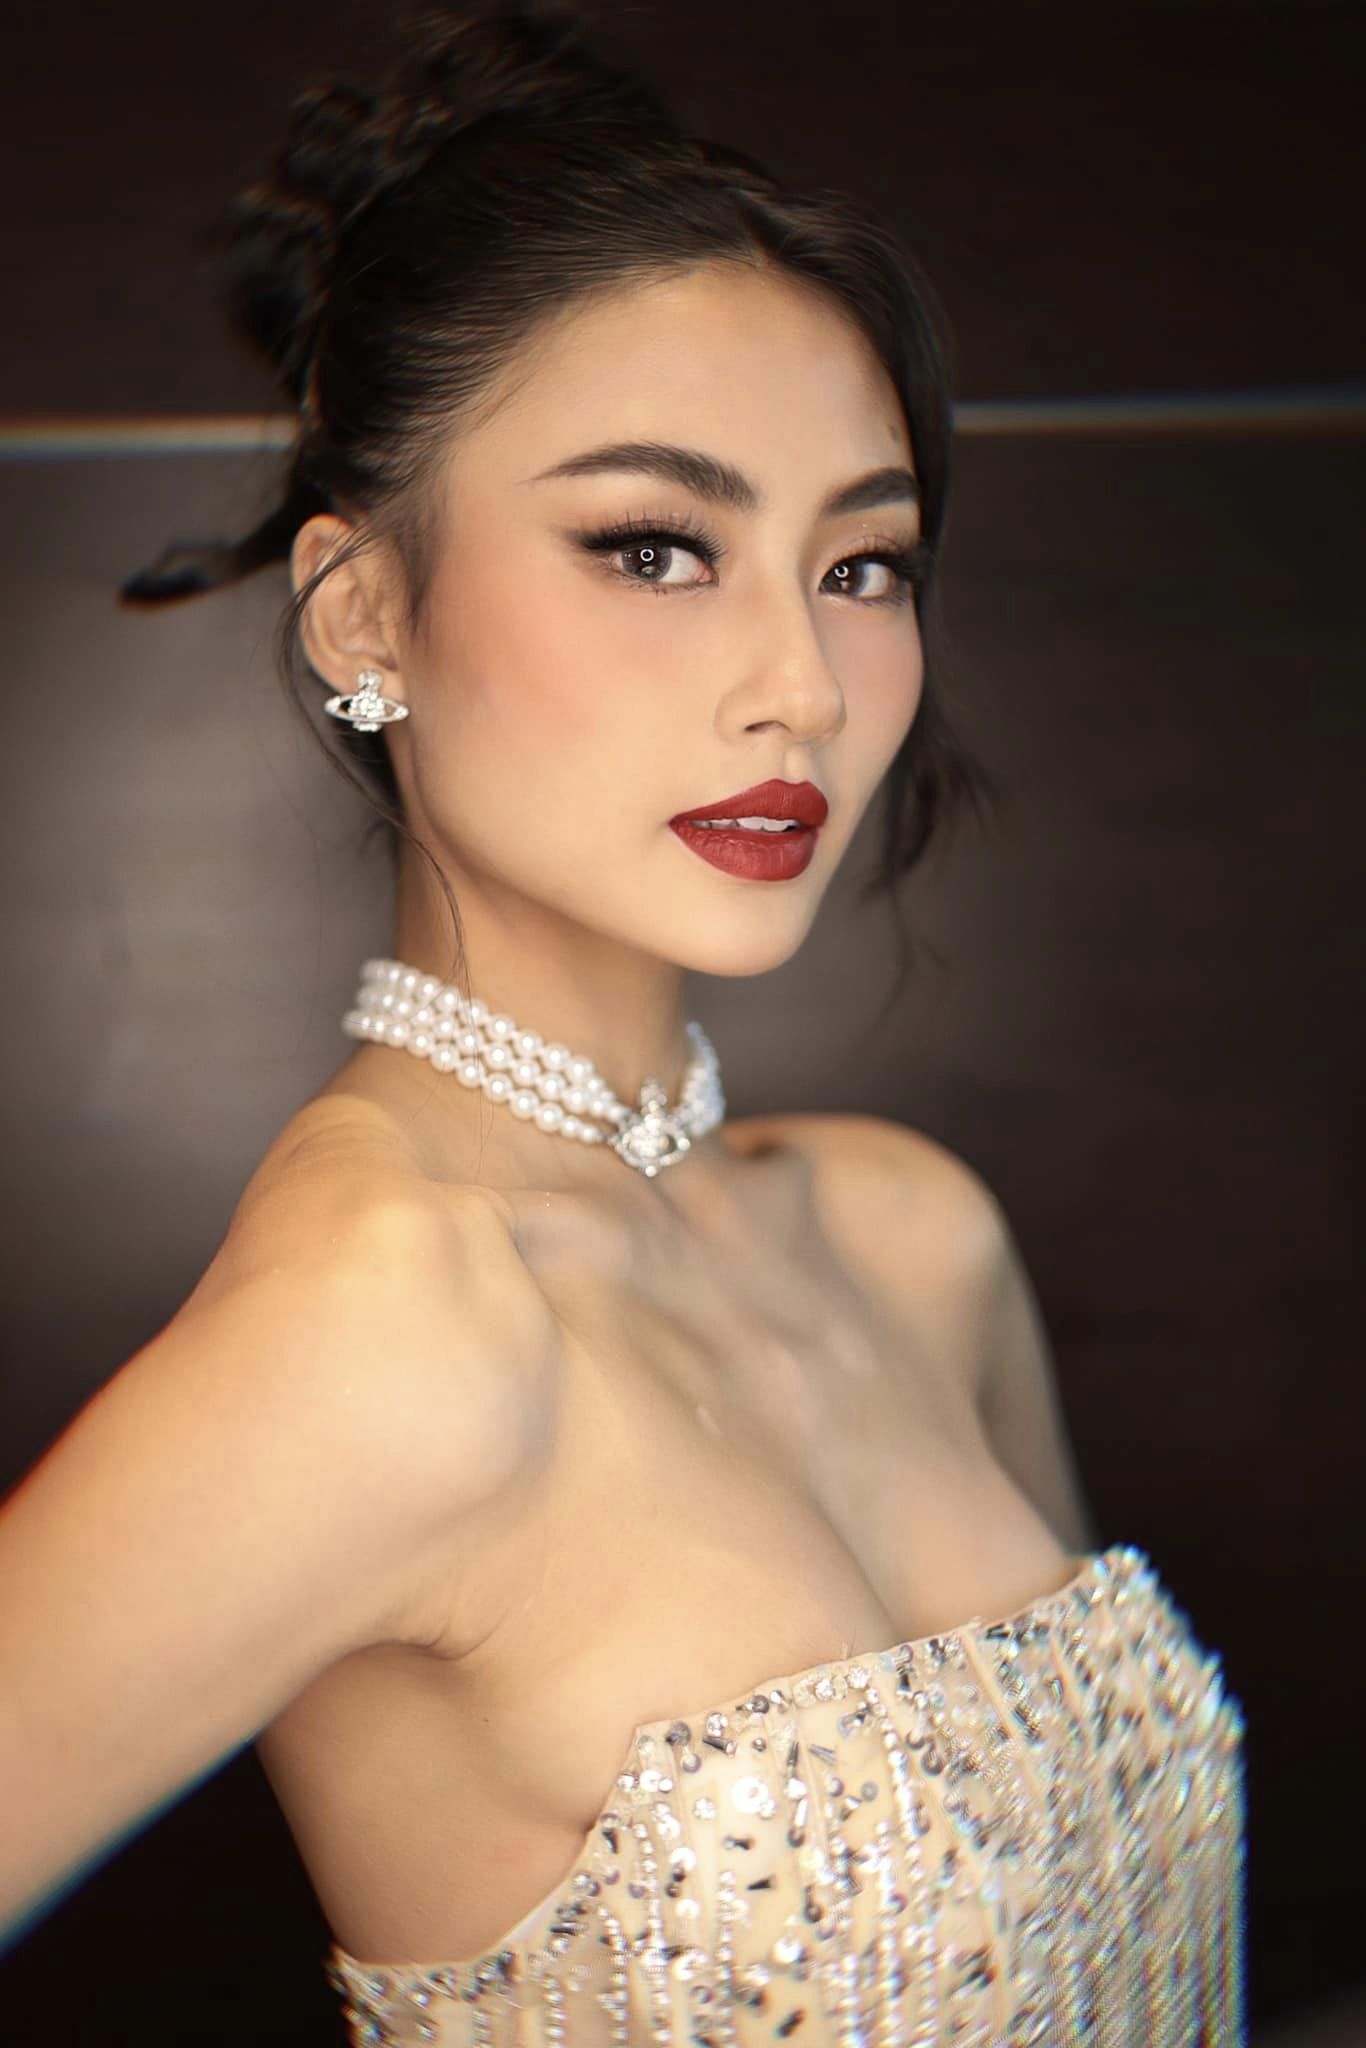 Tân Hoa hậu Hoàn vũ Việt Nam sinh năm 2001: Cựu học sinh trường chuyên, Á quân một cuộc thi nổi tiếng và là trò cưng của Vũ Thu Phương - Ảnh 5.